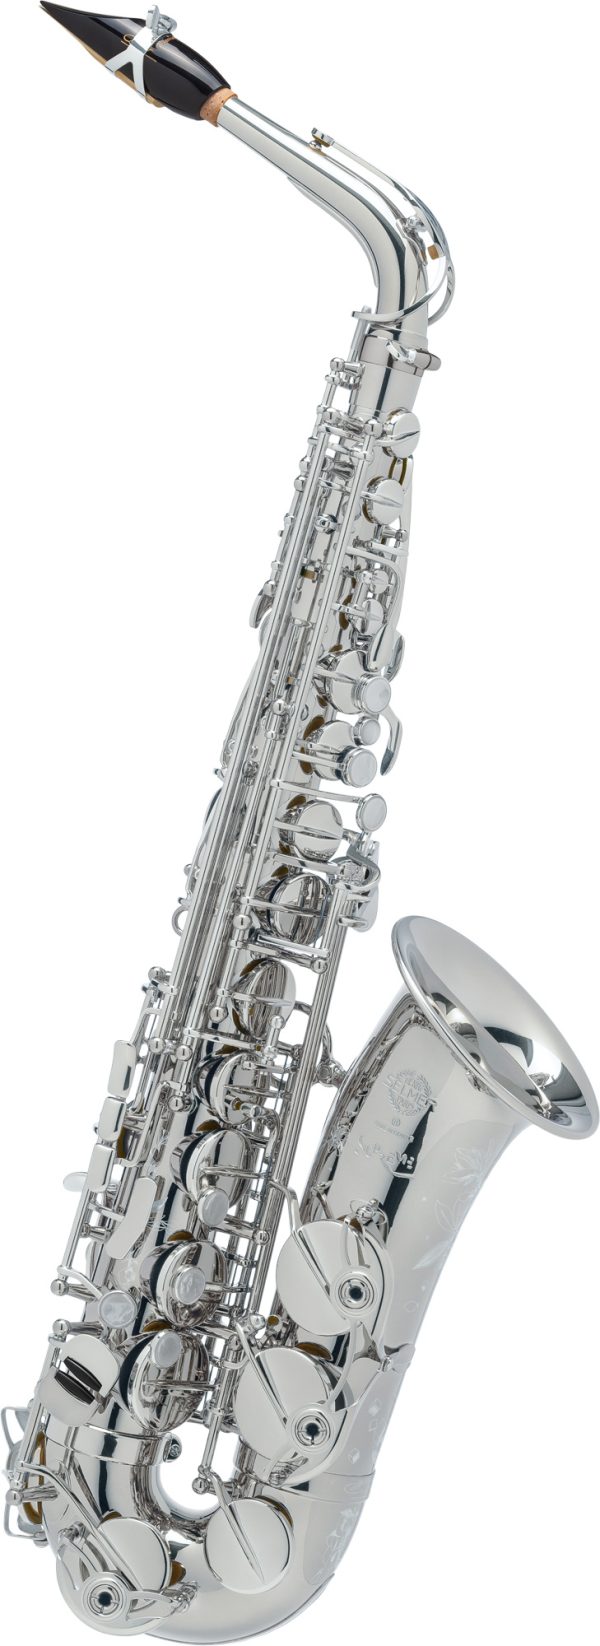 SELMER Altsaxophon Supreme versilbert silver-plated